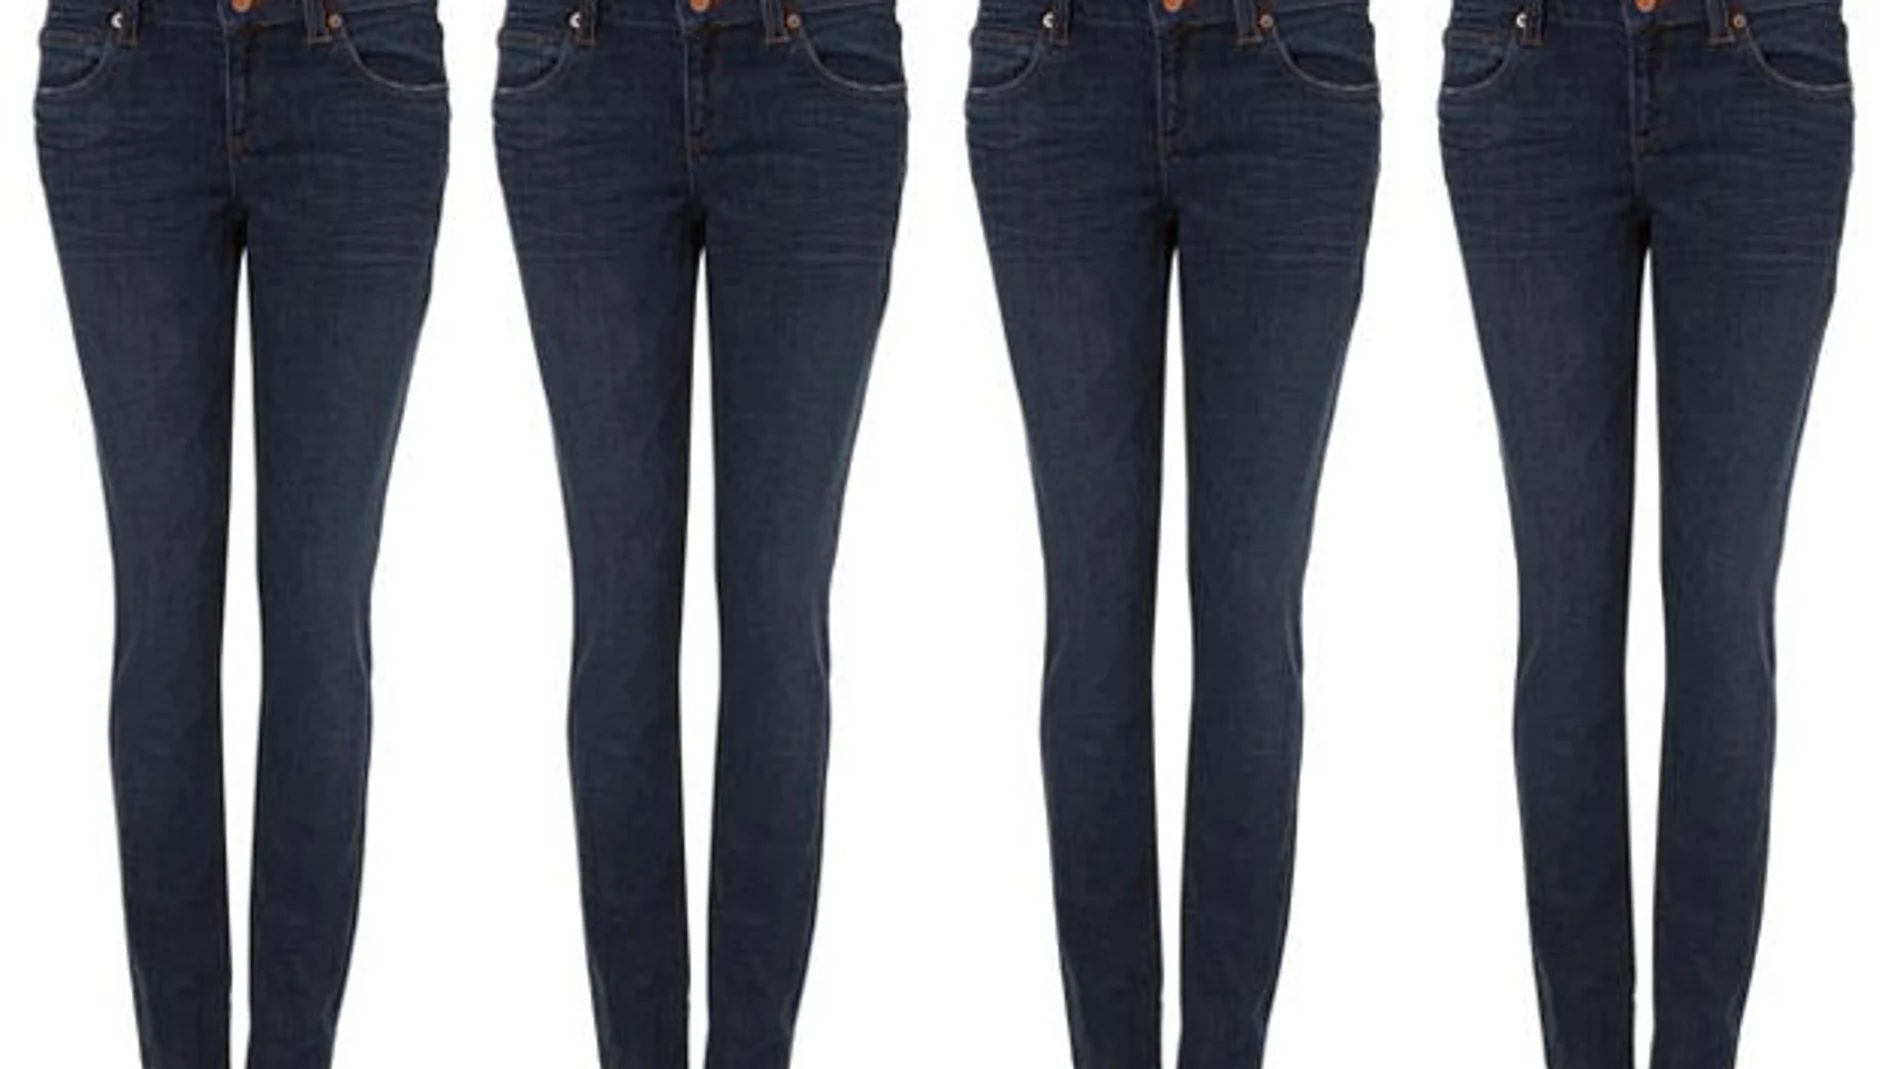 Los skinny jeans, se adaptan muy bien a la piel y estilizan la figura